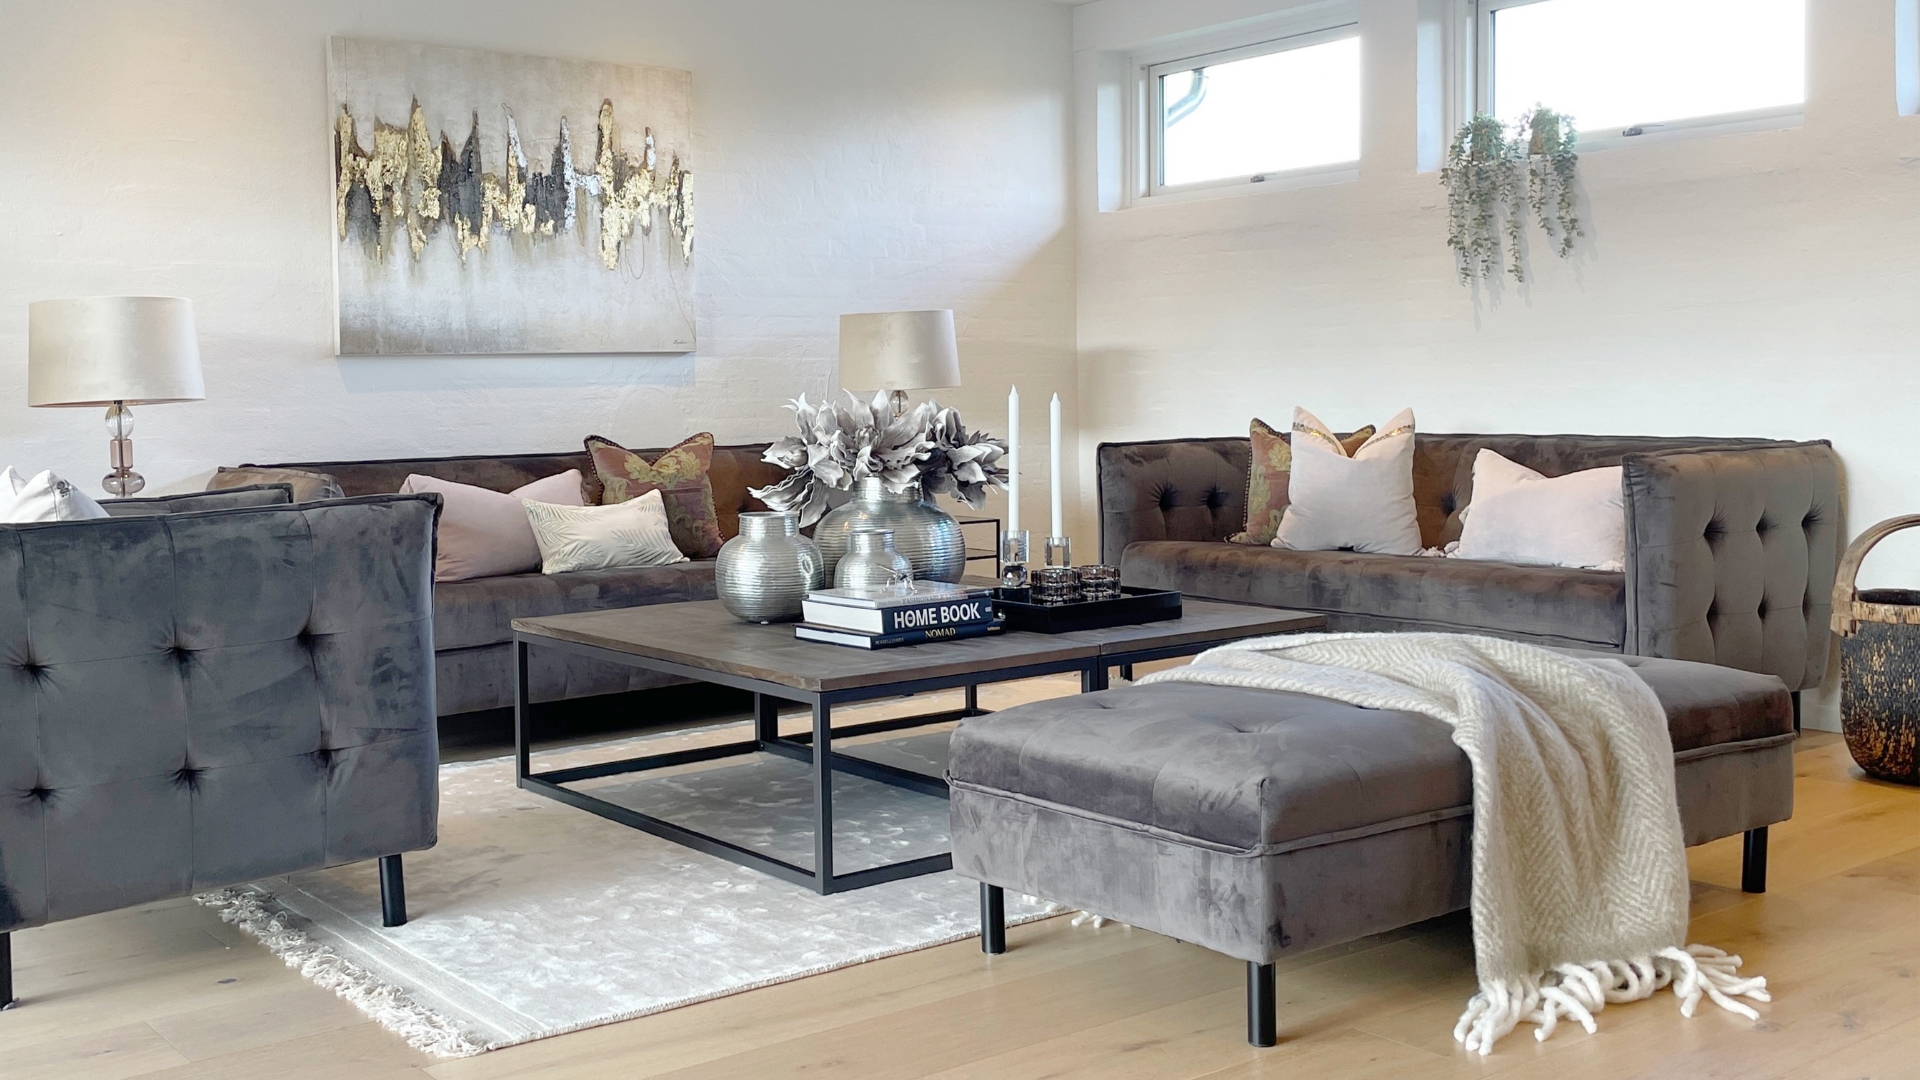 Eksempel på dLux Styling fra InBoligStyling - med flotte og eksklusive møbler og interiør.